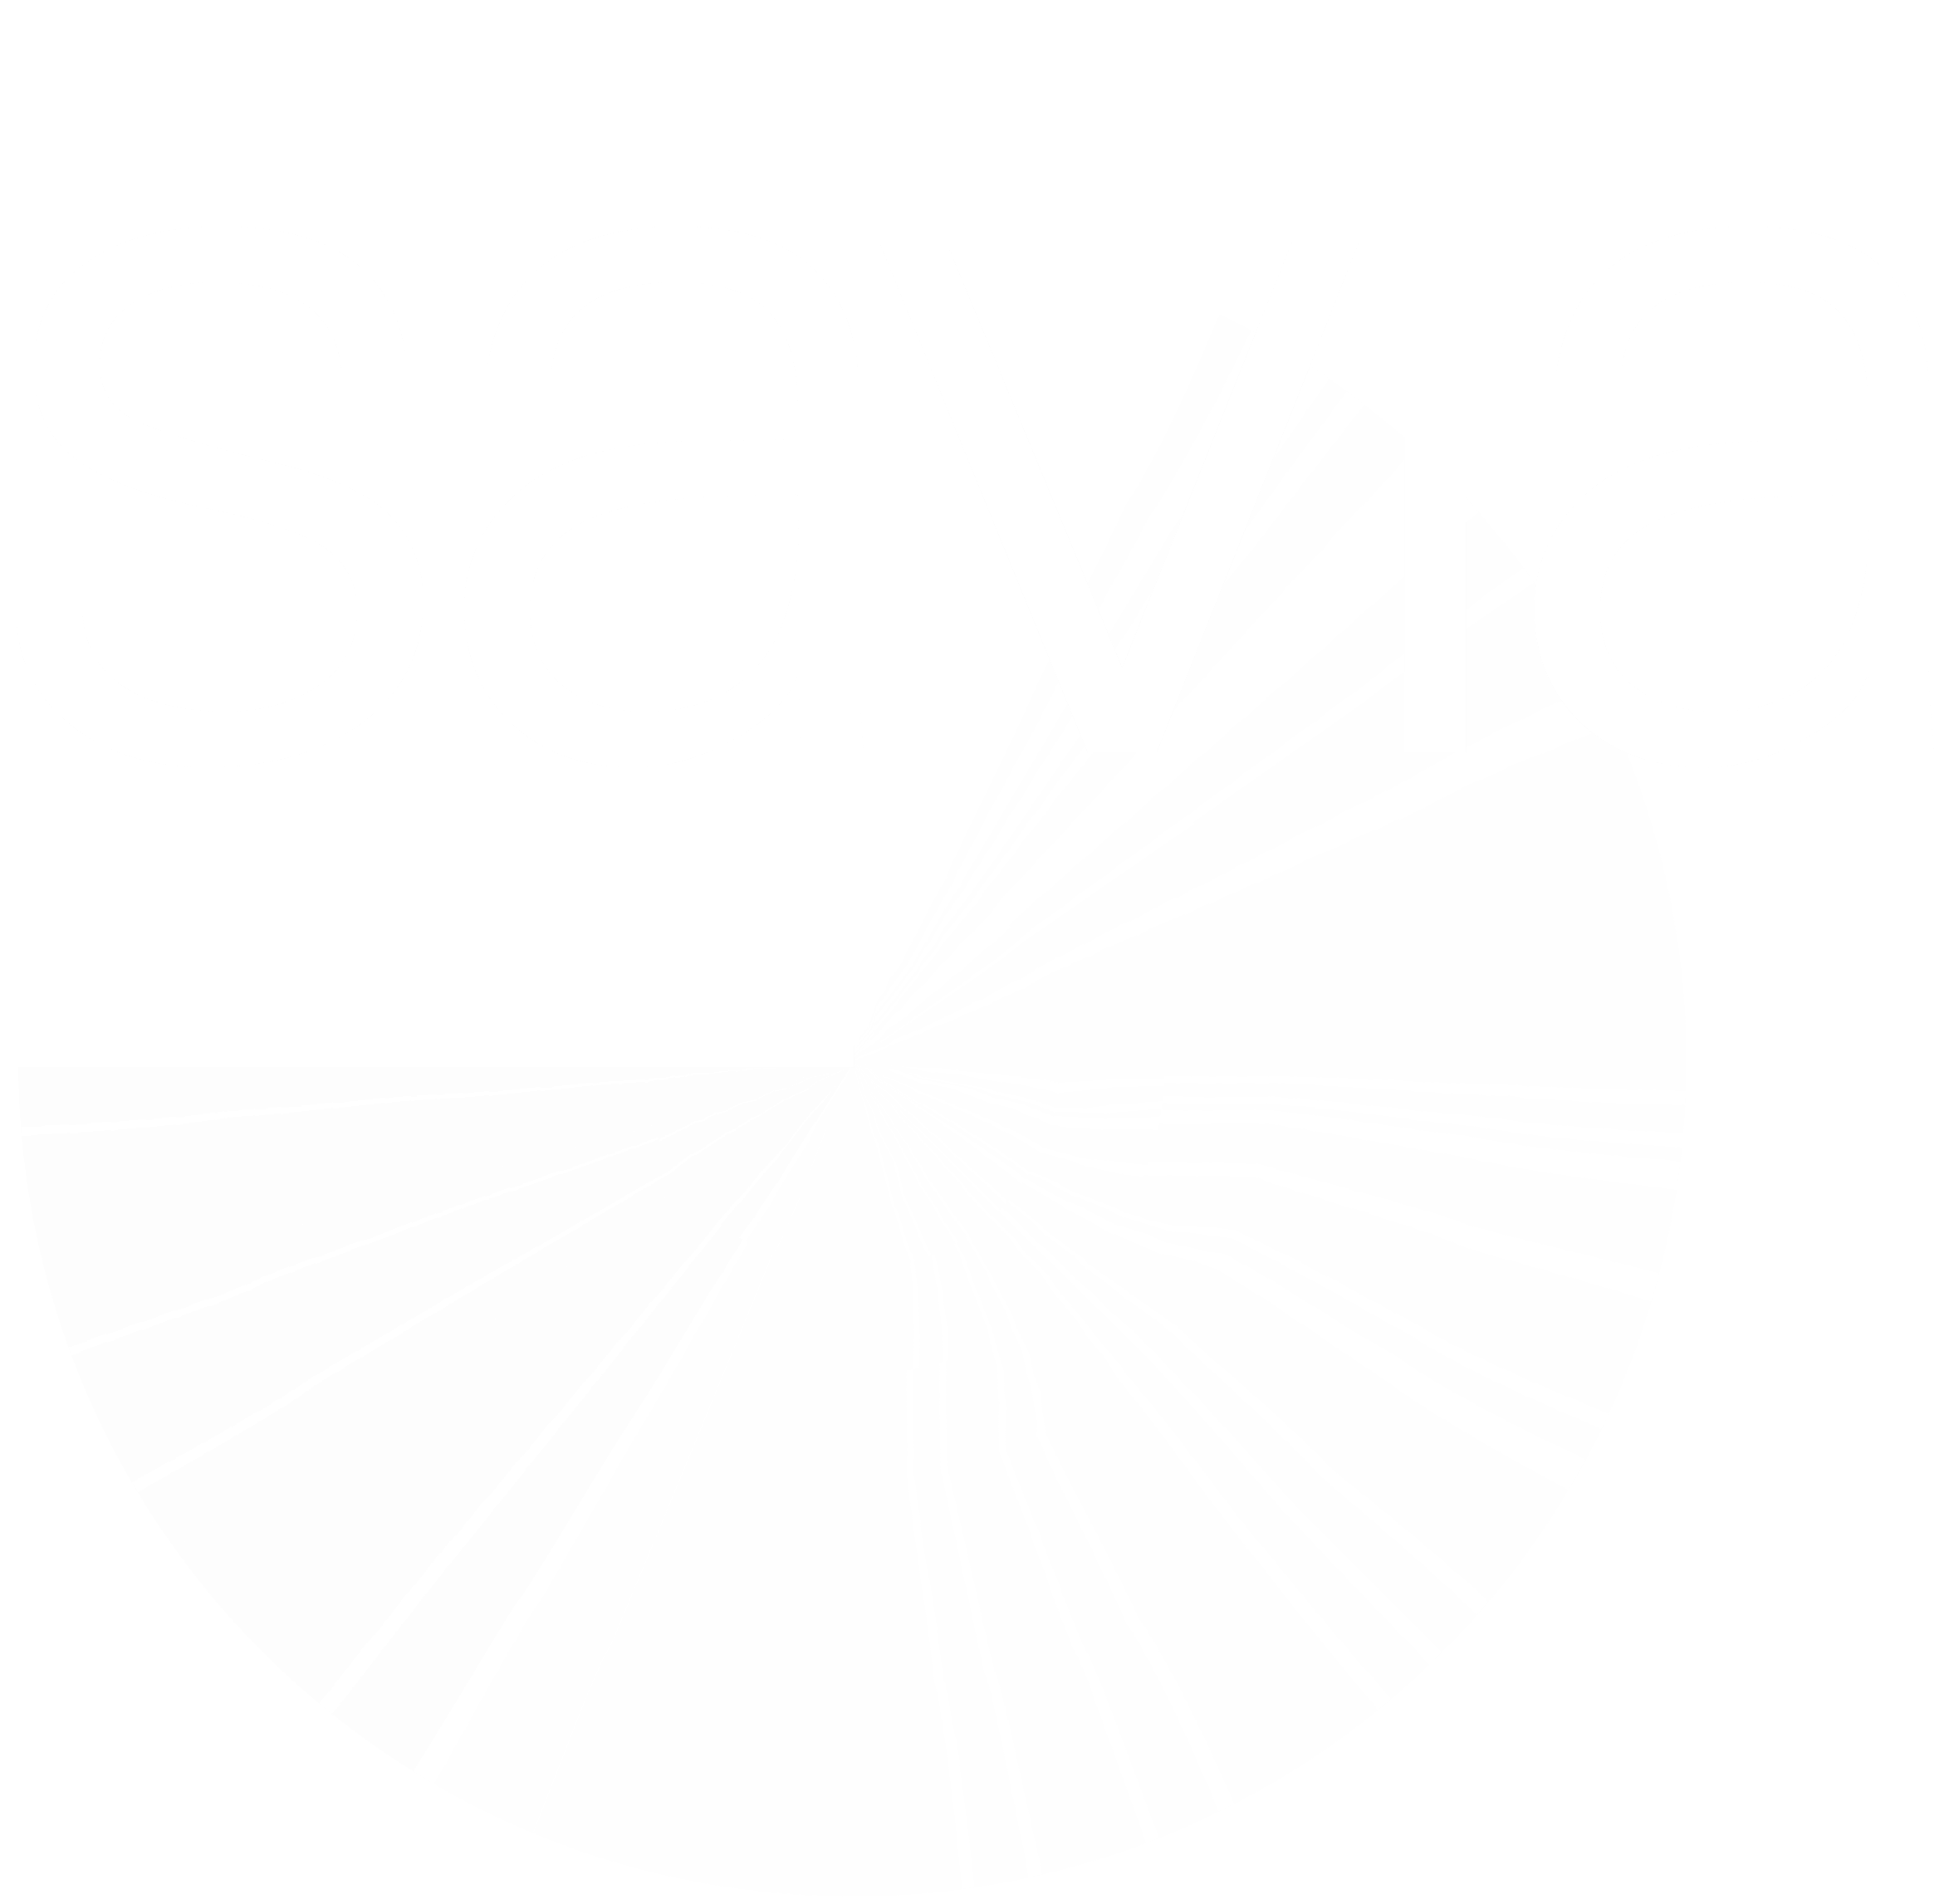 Fundación Savia